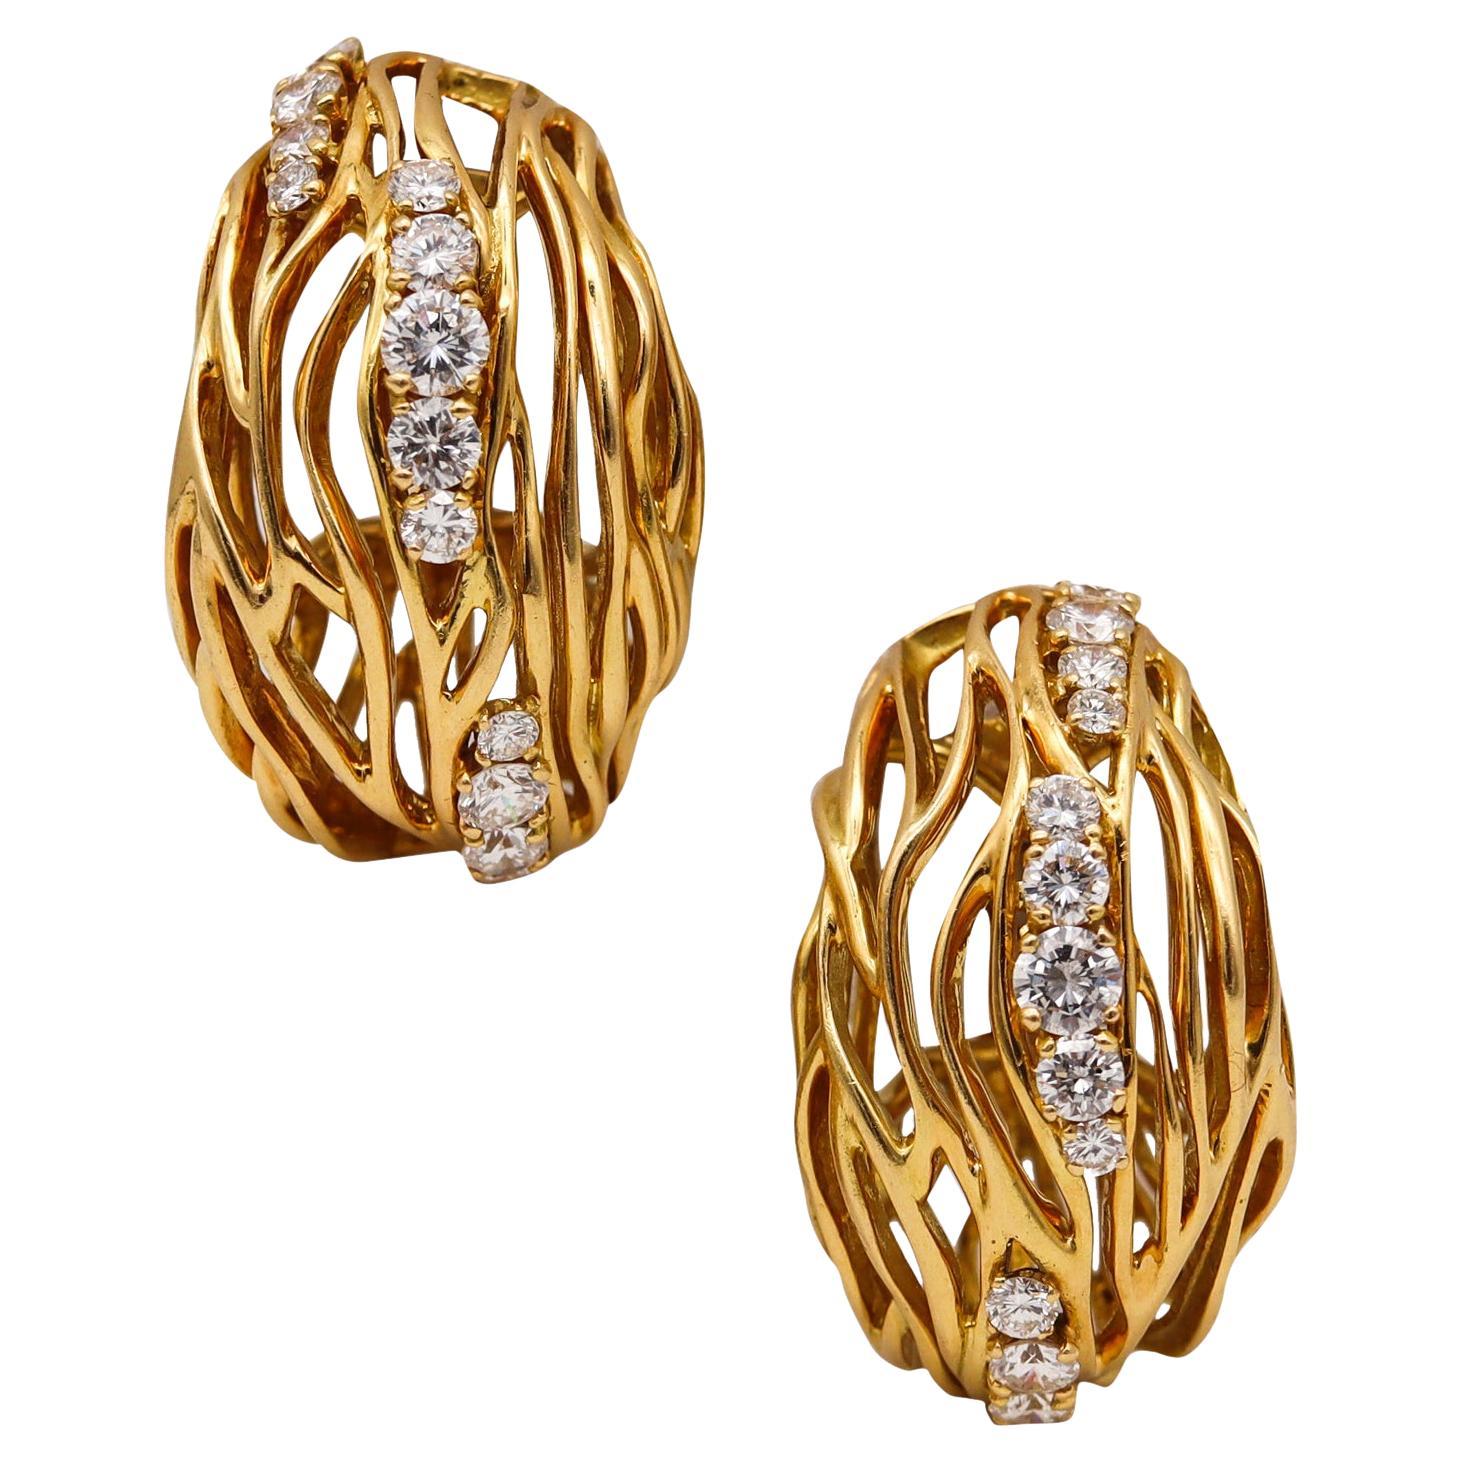 Boucheron 1970 Paris Andre Vassort Hoop Earrings 18Kt Gold with 3.26 Ct Diamonds